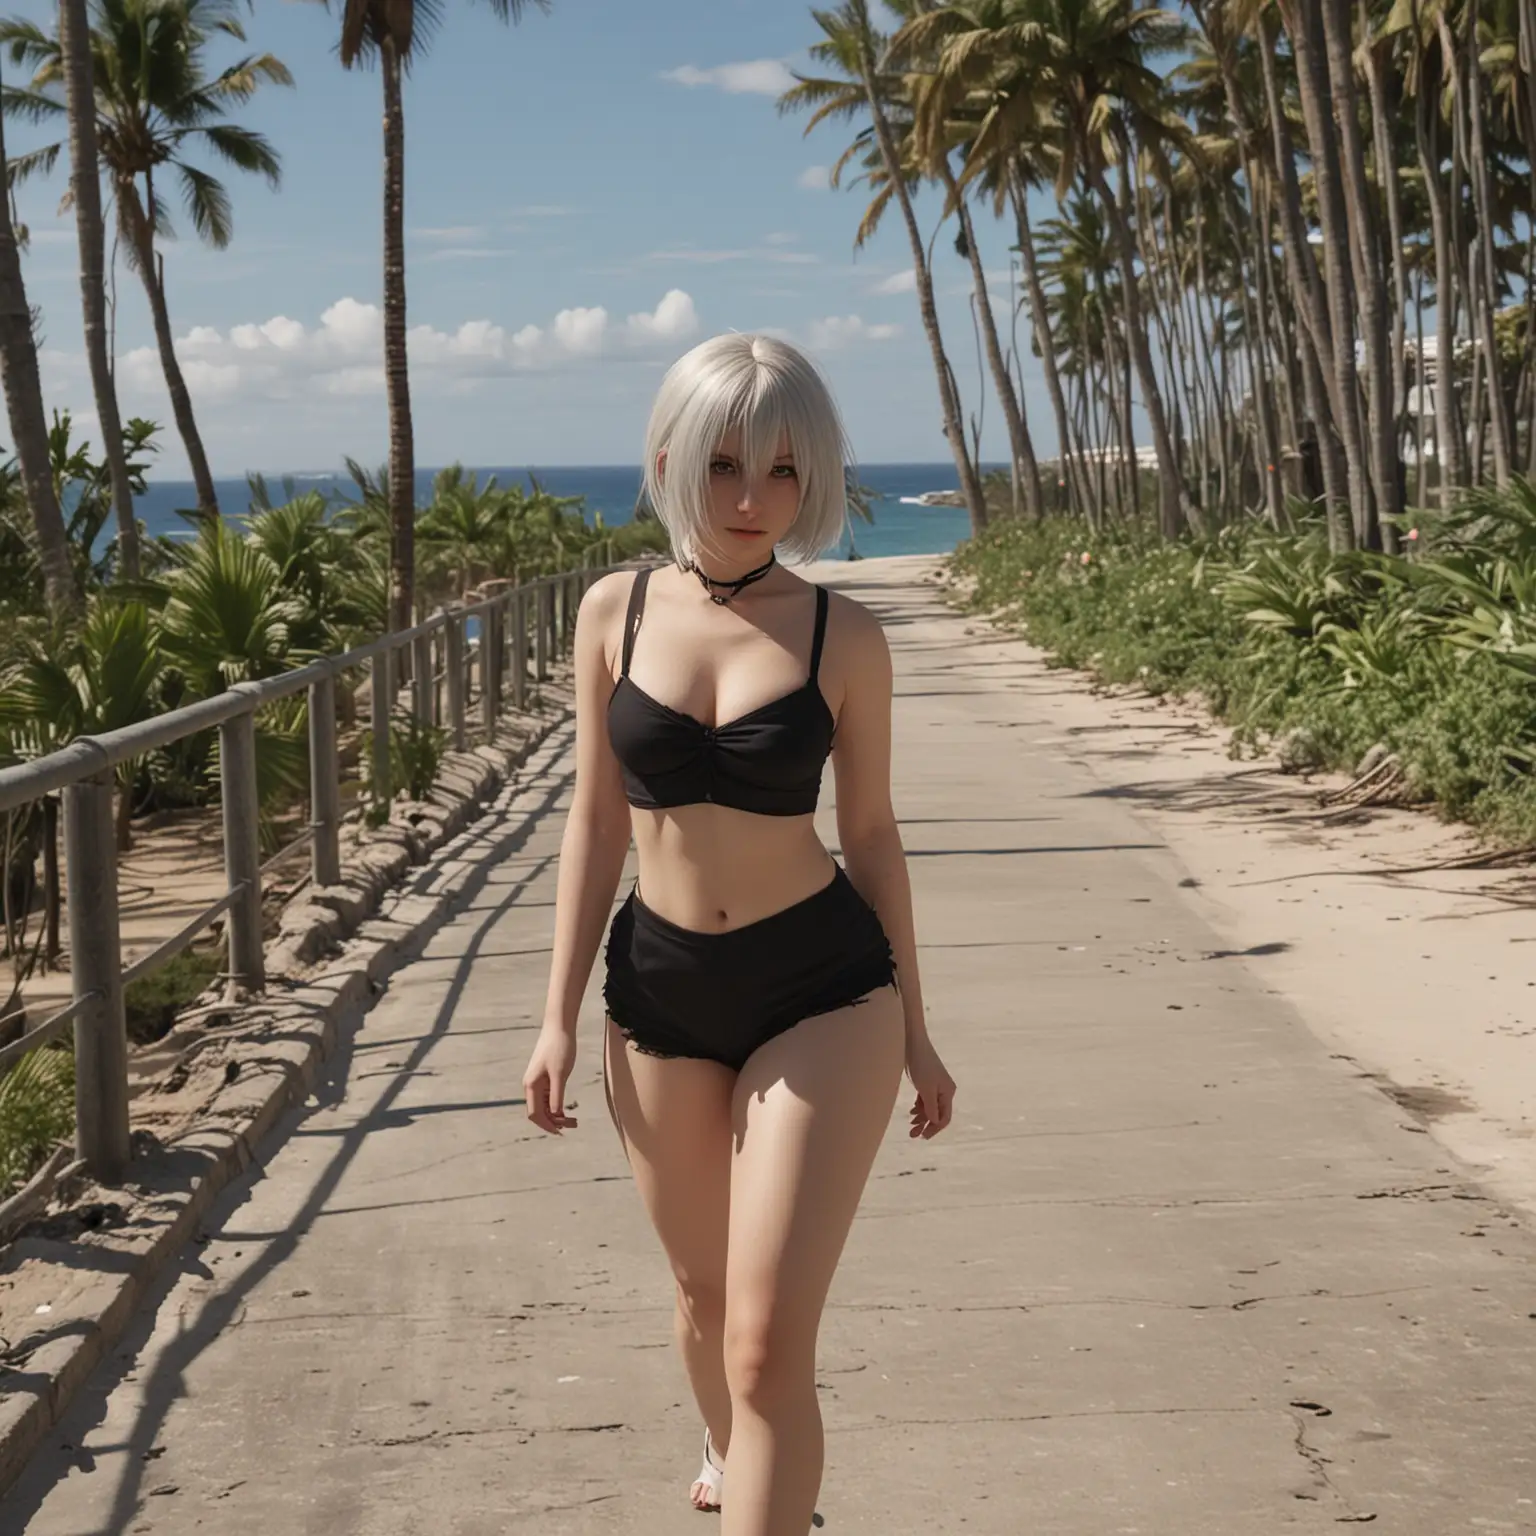 Yorha 2B, в коротких шортах, волосы развиваются на ветру, 
идет по бетонной тропинке, на фоне пляж и пальмы